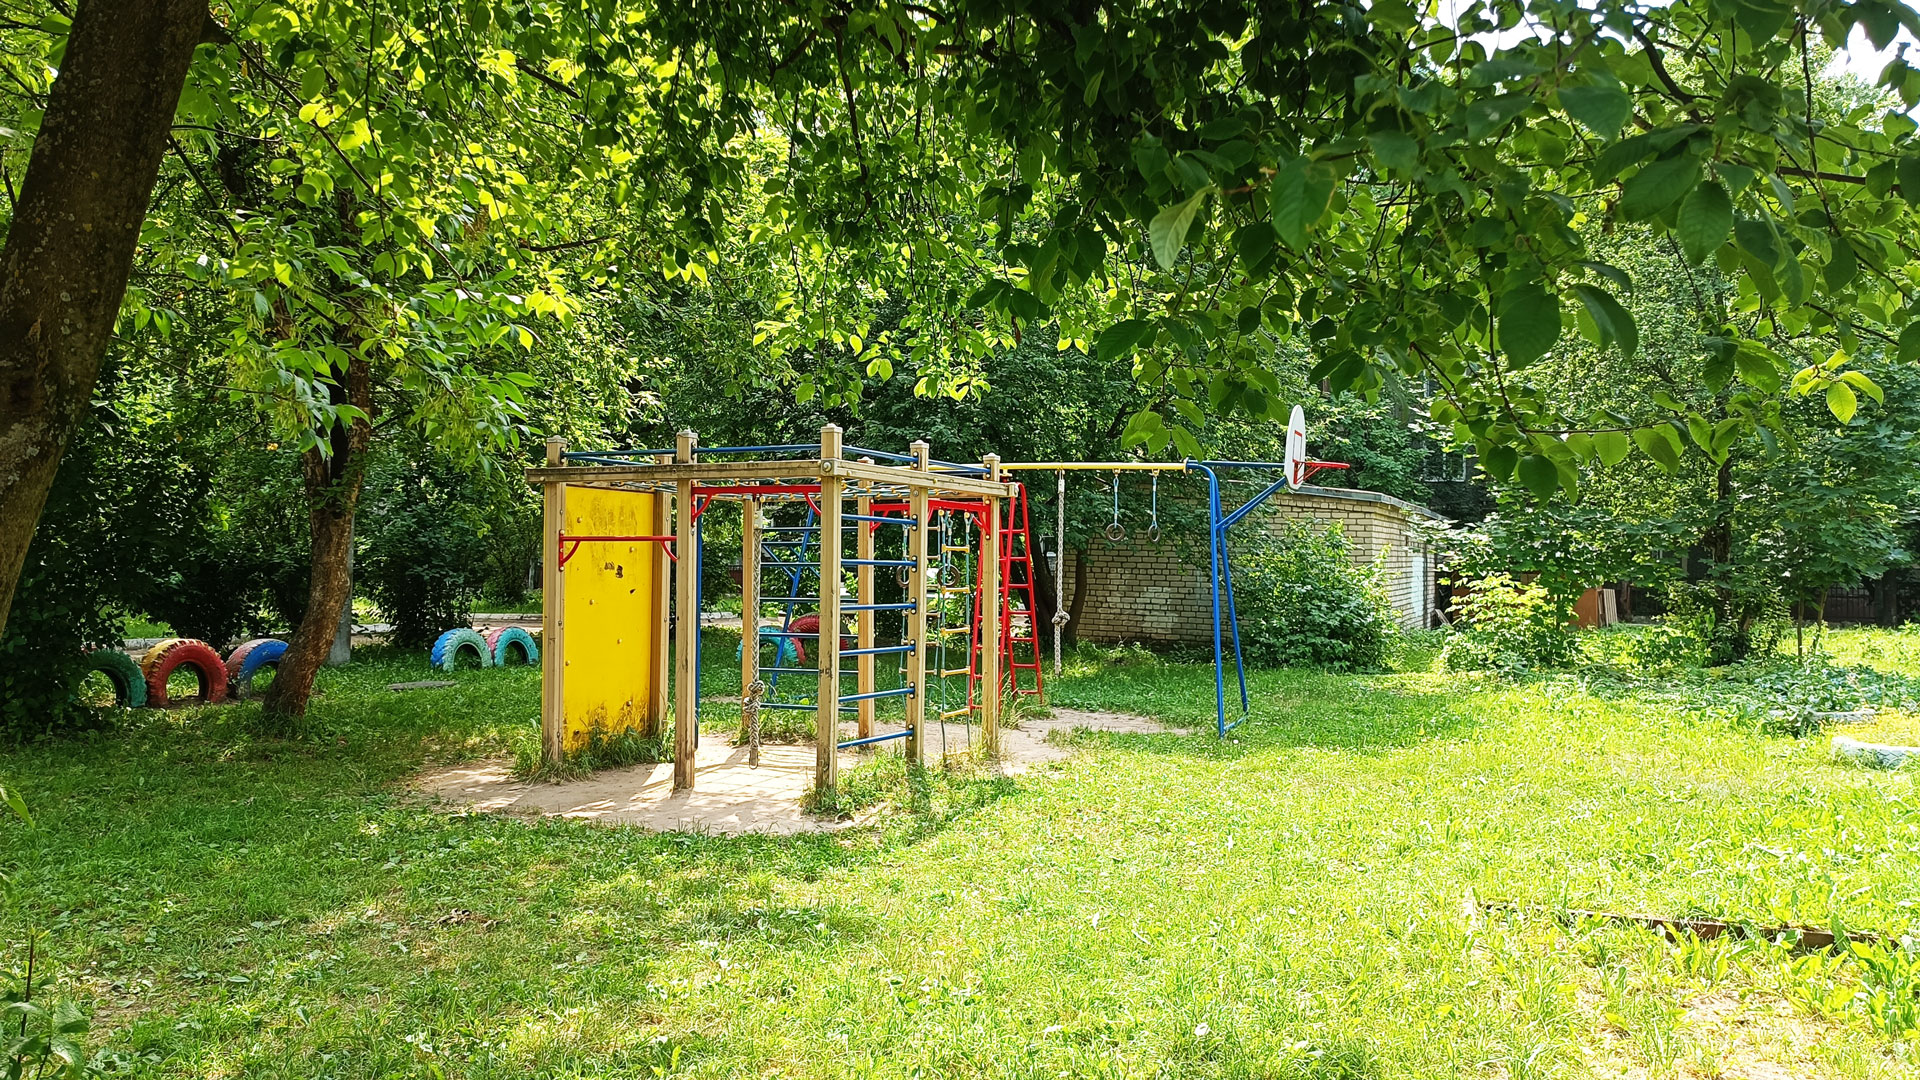 Игровая площадка школы-интерната 8 в г. Ярославле по улице Урицкого.